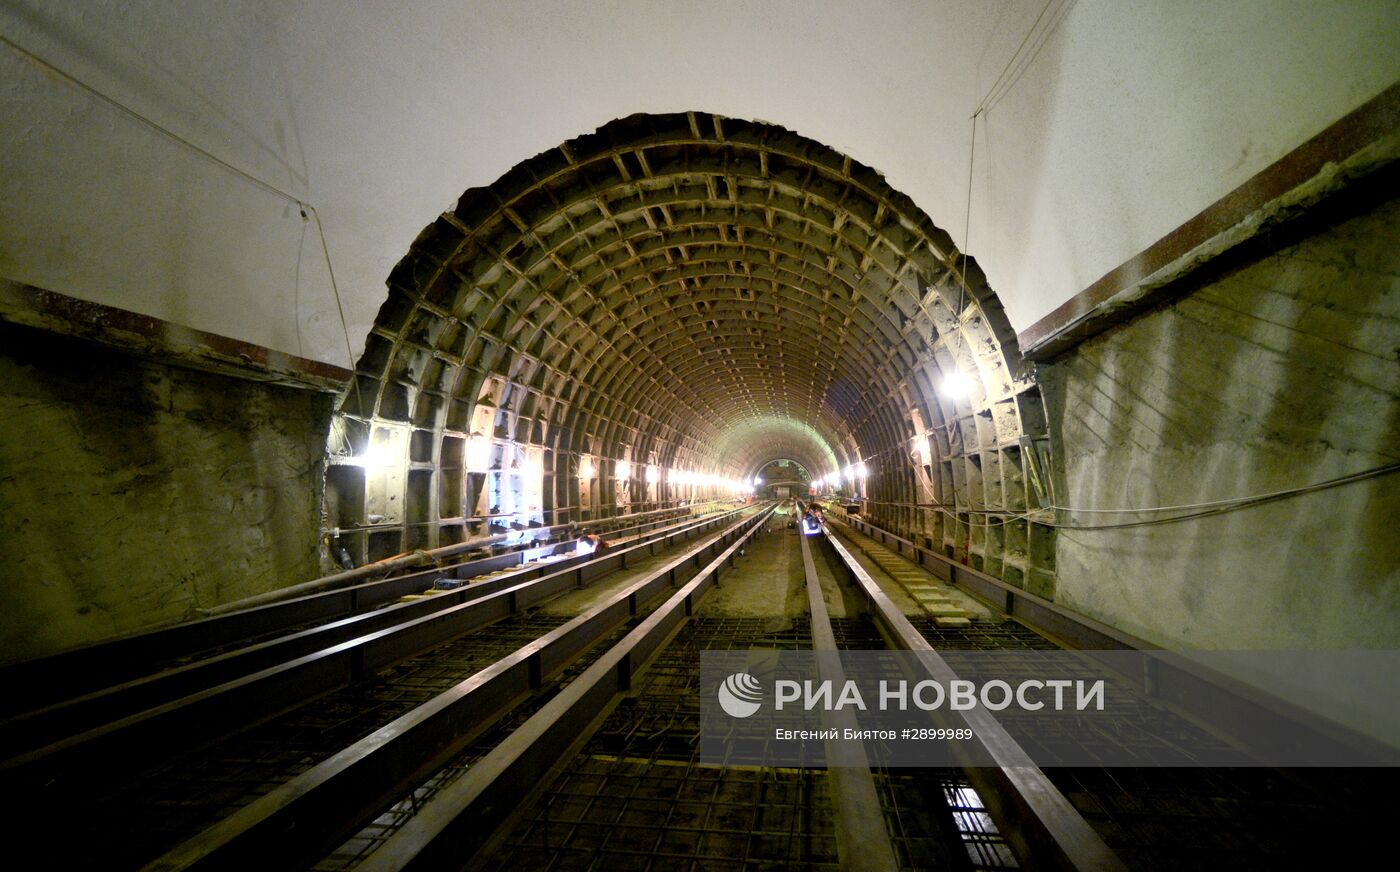 Строительно-монтажные работы на станции метро "Фрунзенская"